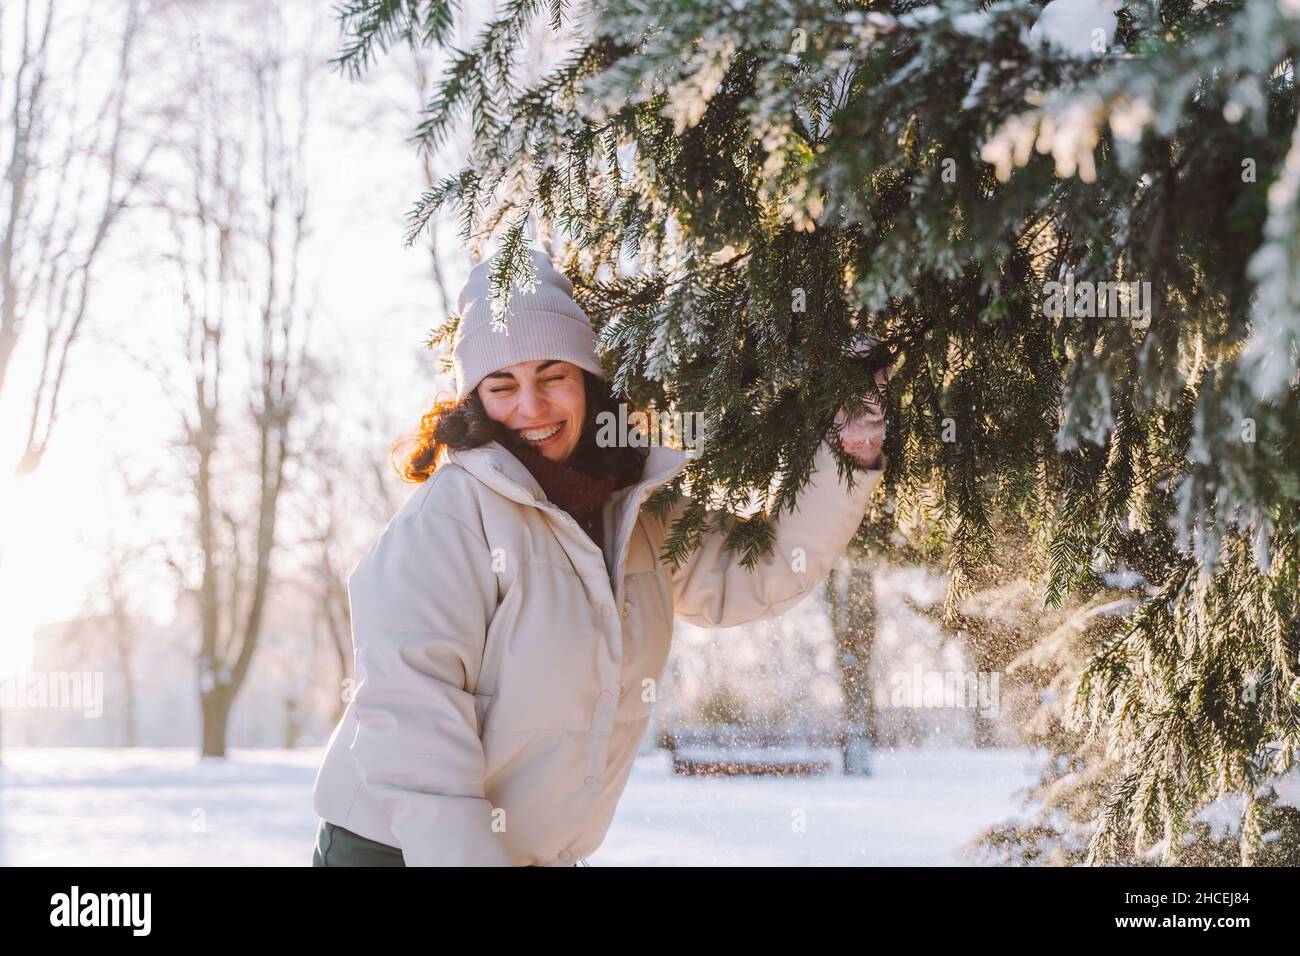 Une jeune femme souriante et carie se promet se cache derrière un sapin de Noël recouvert de neige.Émotions positives, fraîcheur, vacances. Banque D'Images